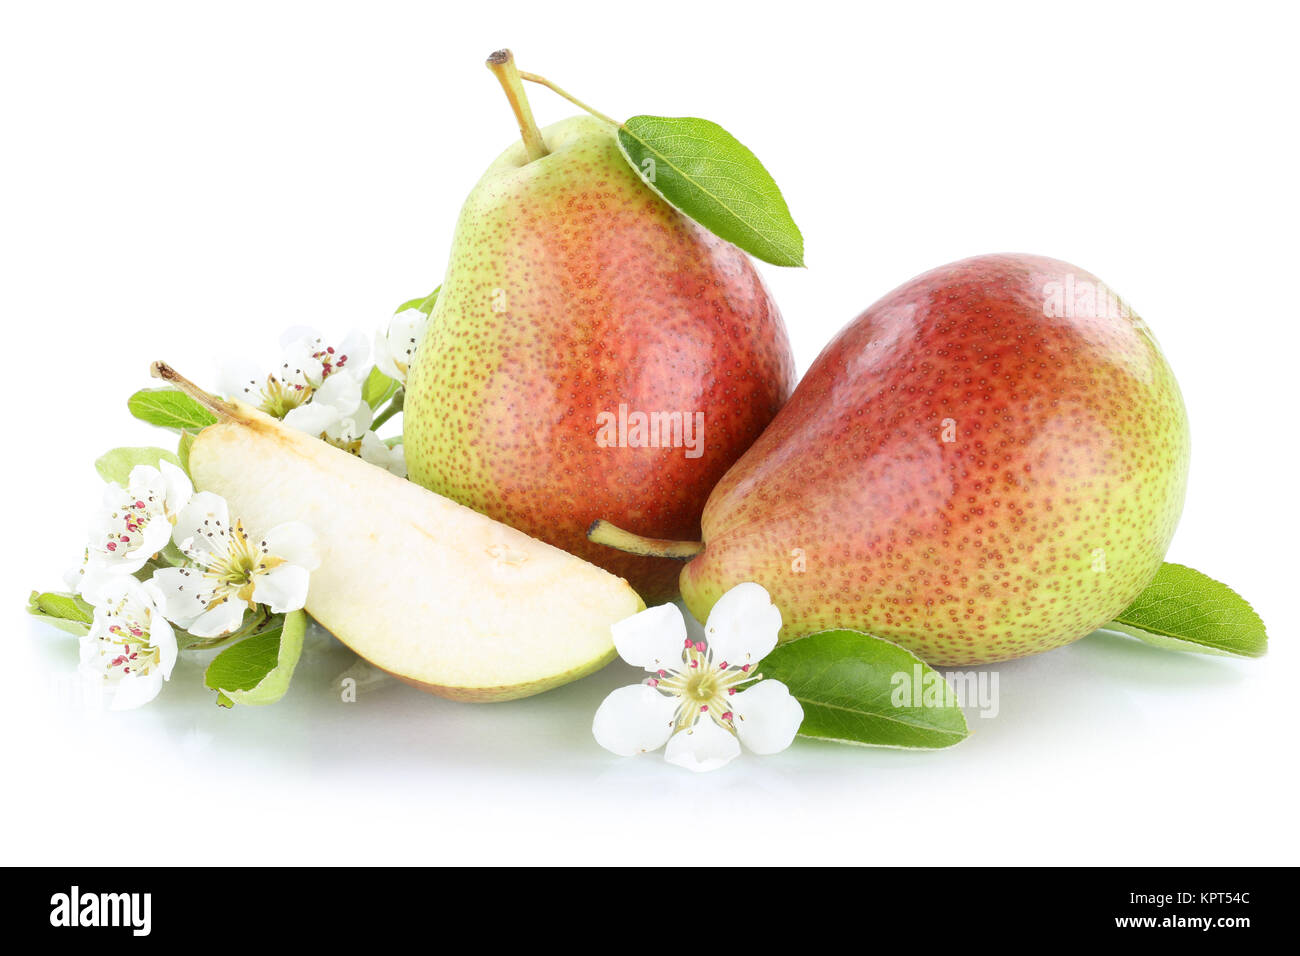 Birnen Birne Frucht frische Früchte Obst Freisteller freigestellt isoliert  vor einem weissen Hintergrund Stock Photo - Alamy